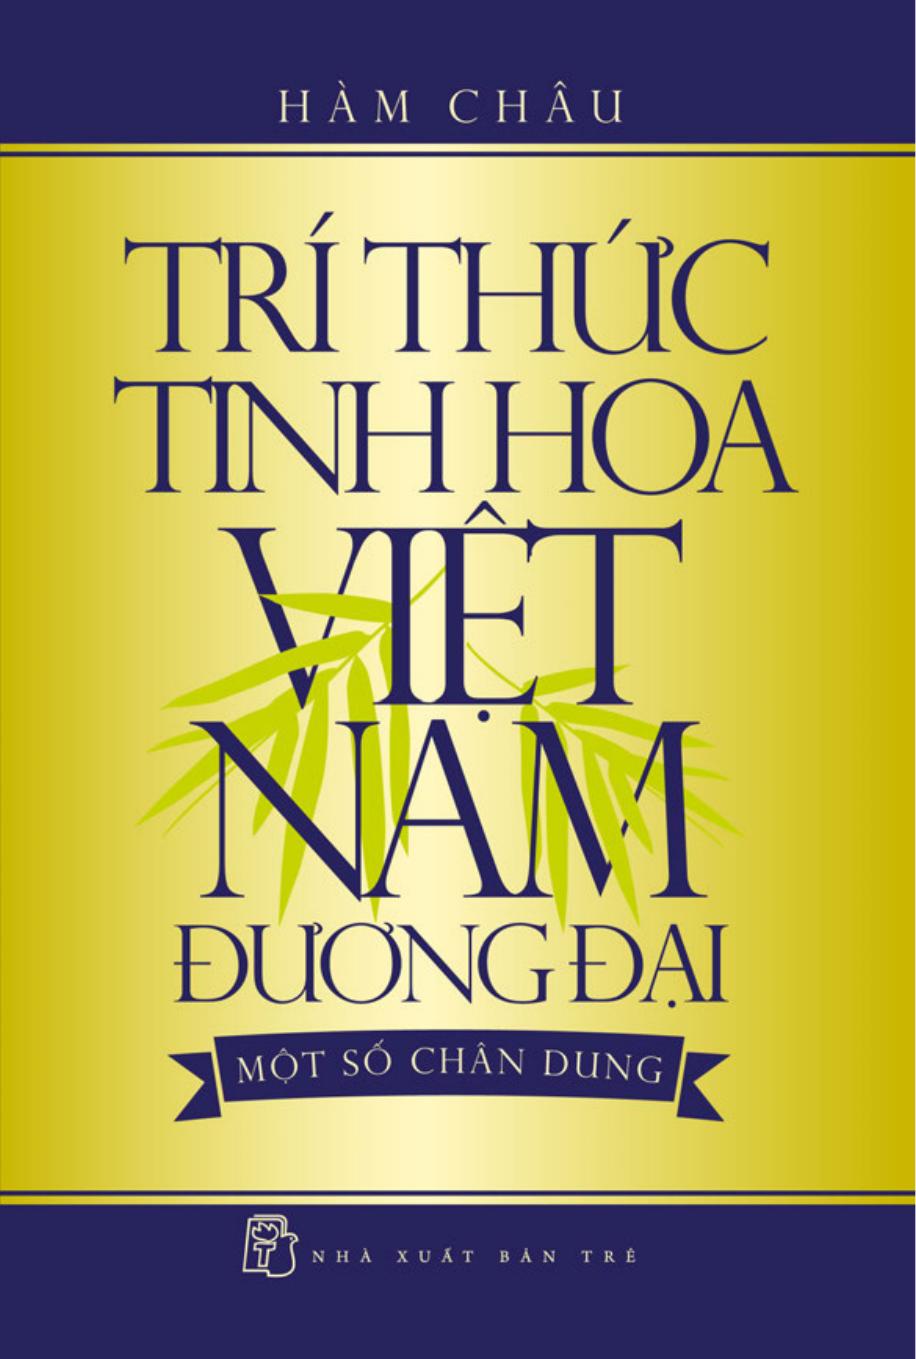 Trí Thức Tinh Hoa Việt Nam Đương Đại - Một Số Chân Dung - Hàm Châu